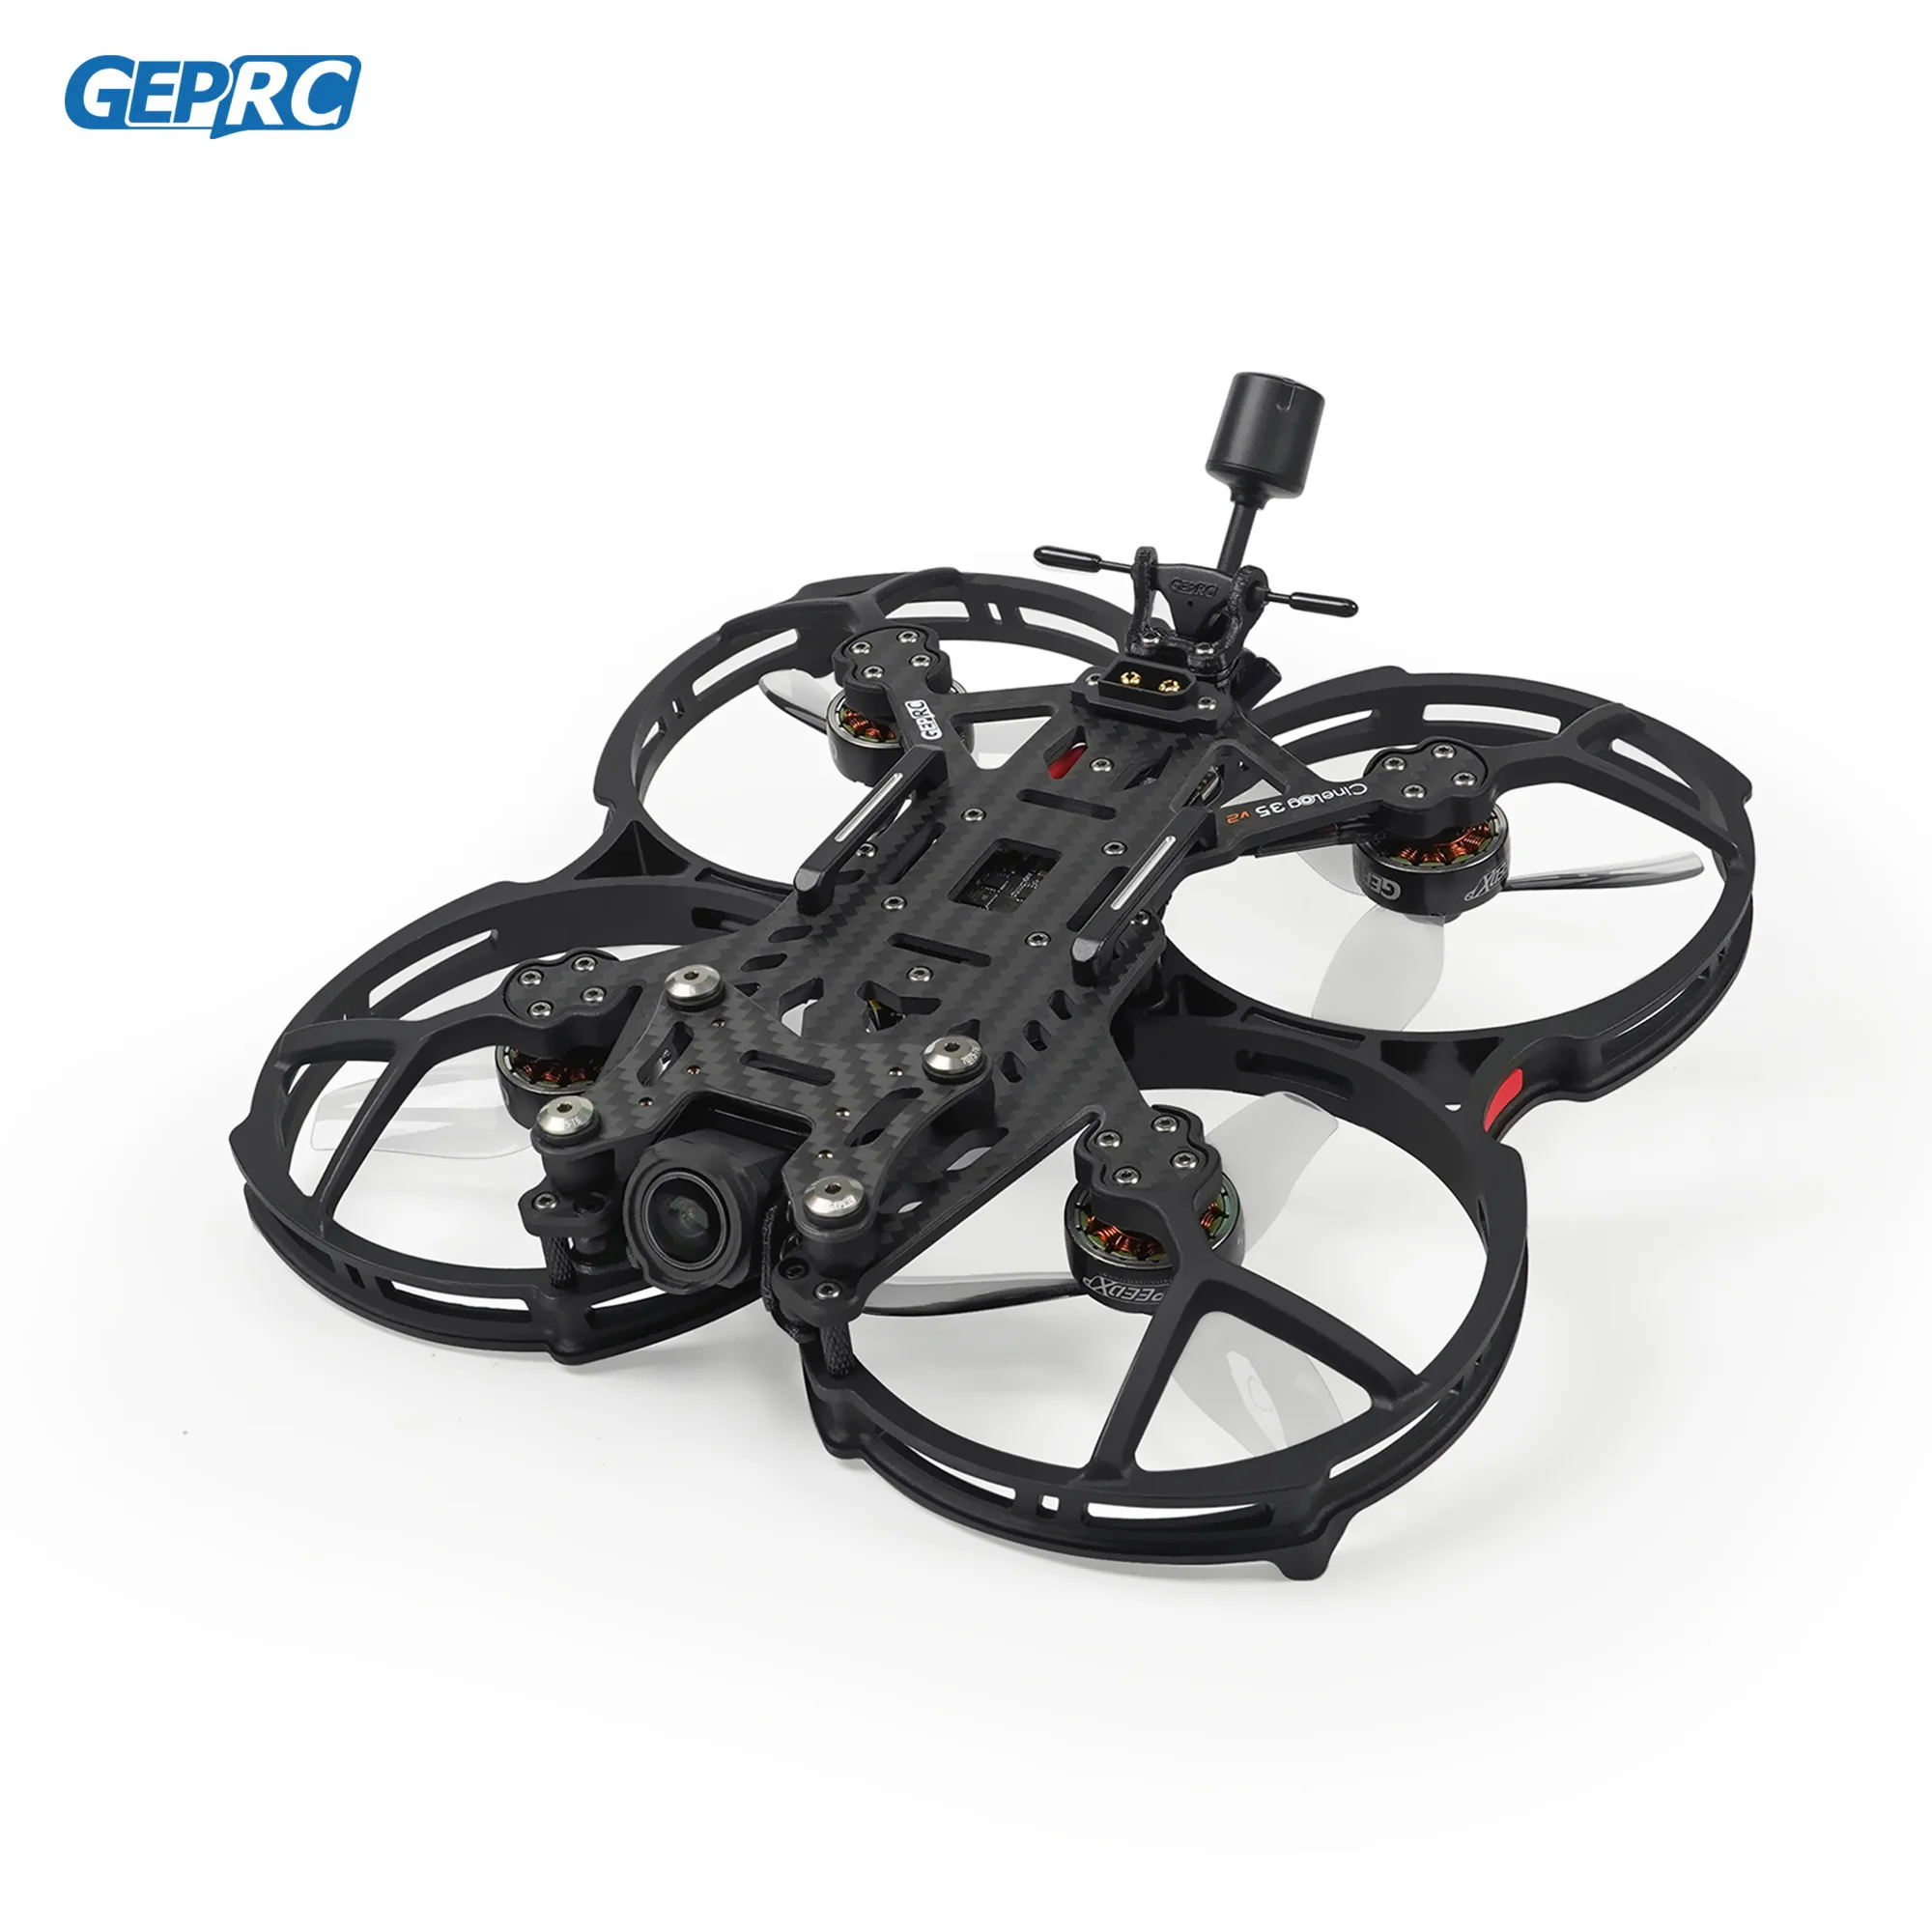 

GEPRC Cinelog35 V2 Analog FPV Drone System 2650KV VTX SPEEDX2 ICM 42688-P F722-45A AIO V2 RC Quadcopter Freestyle Drone